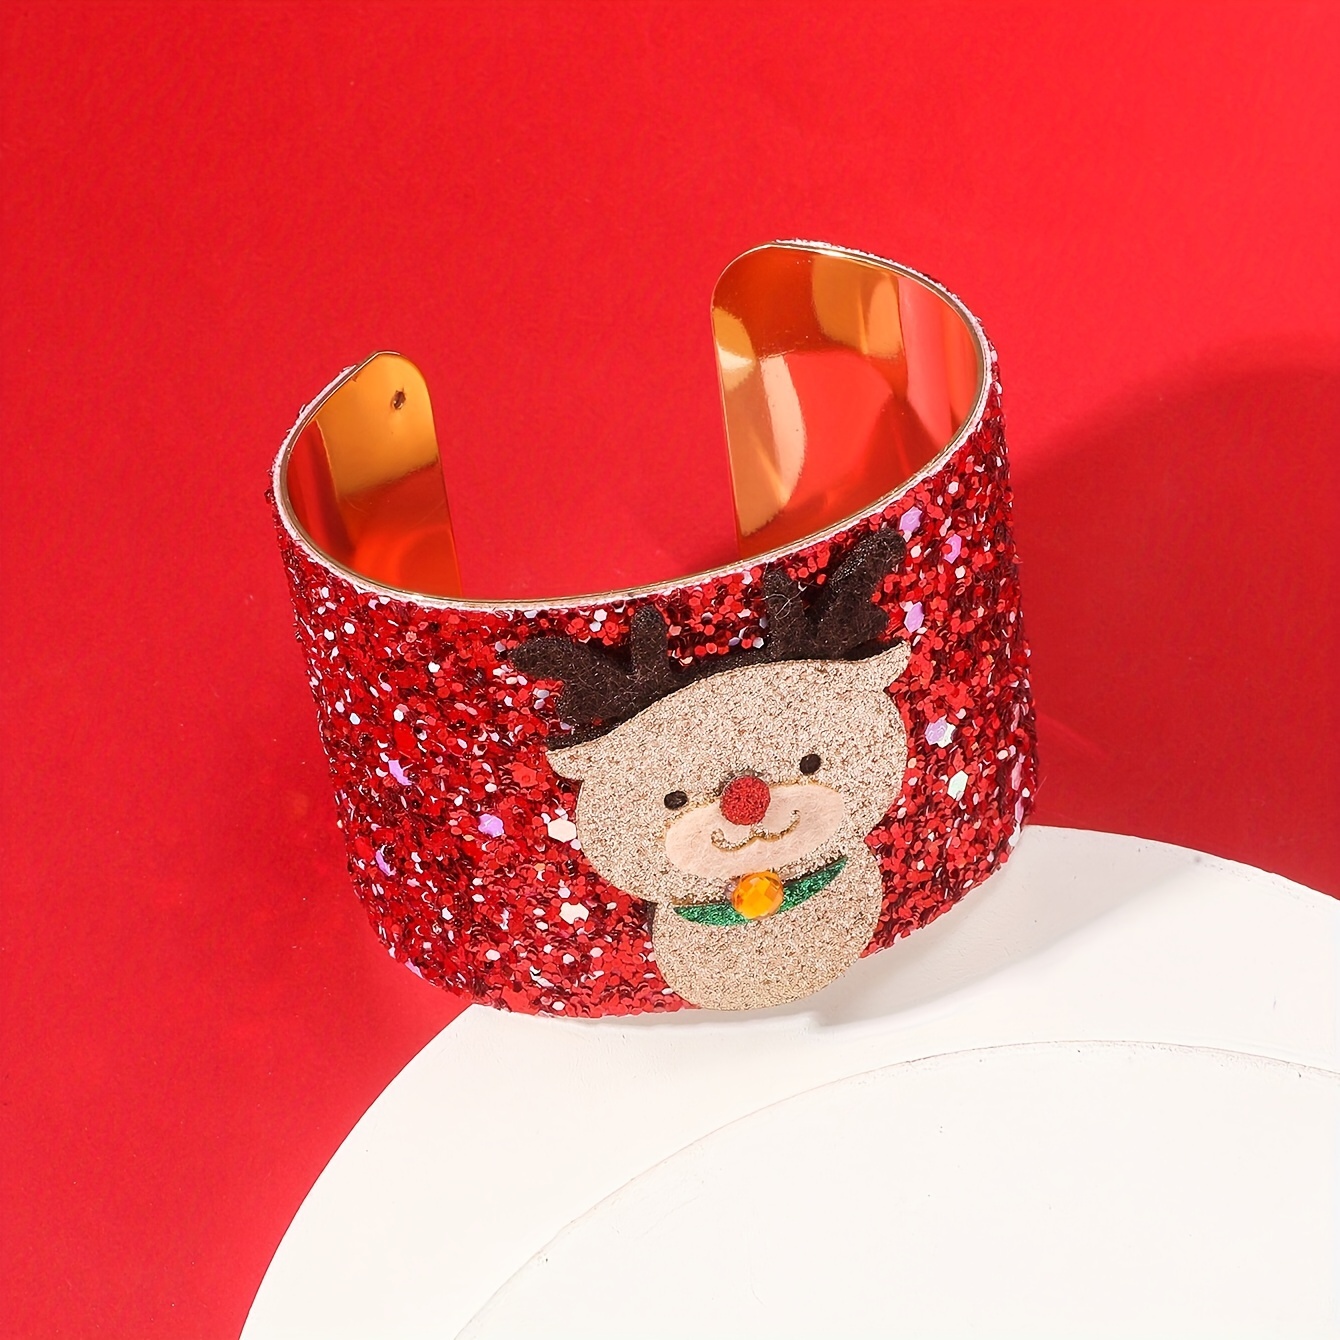 DIY -Jingle Bell bracelet, Christmas bracelet, crafts for kids